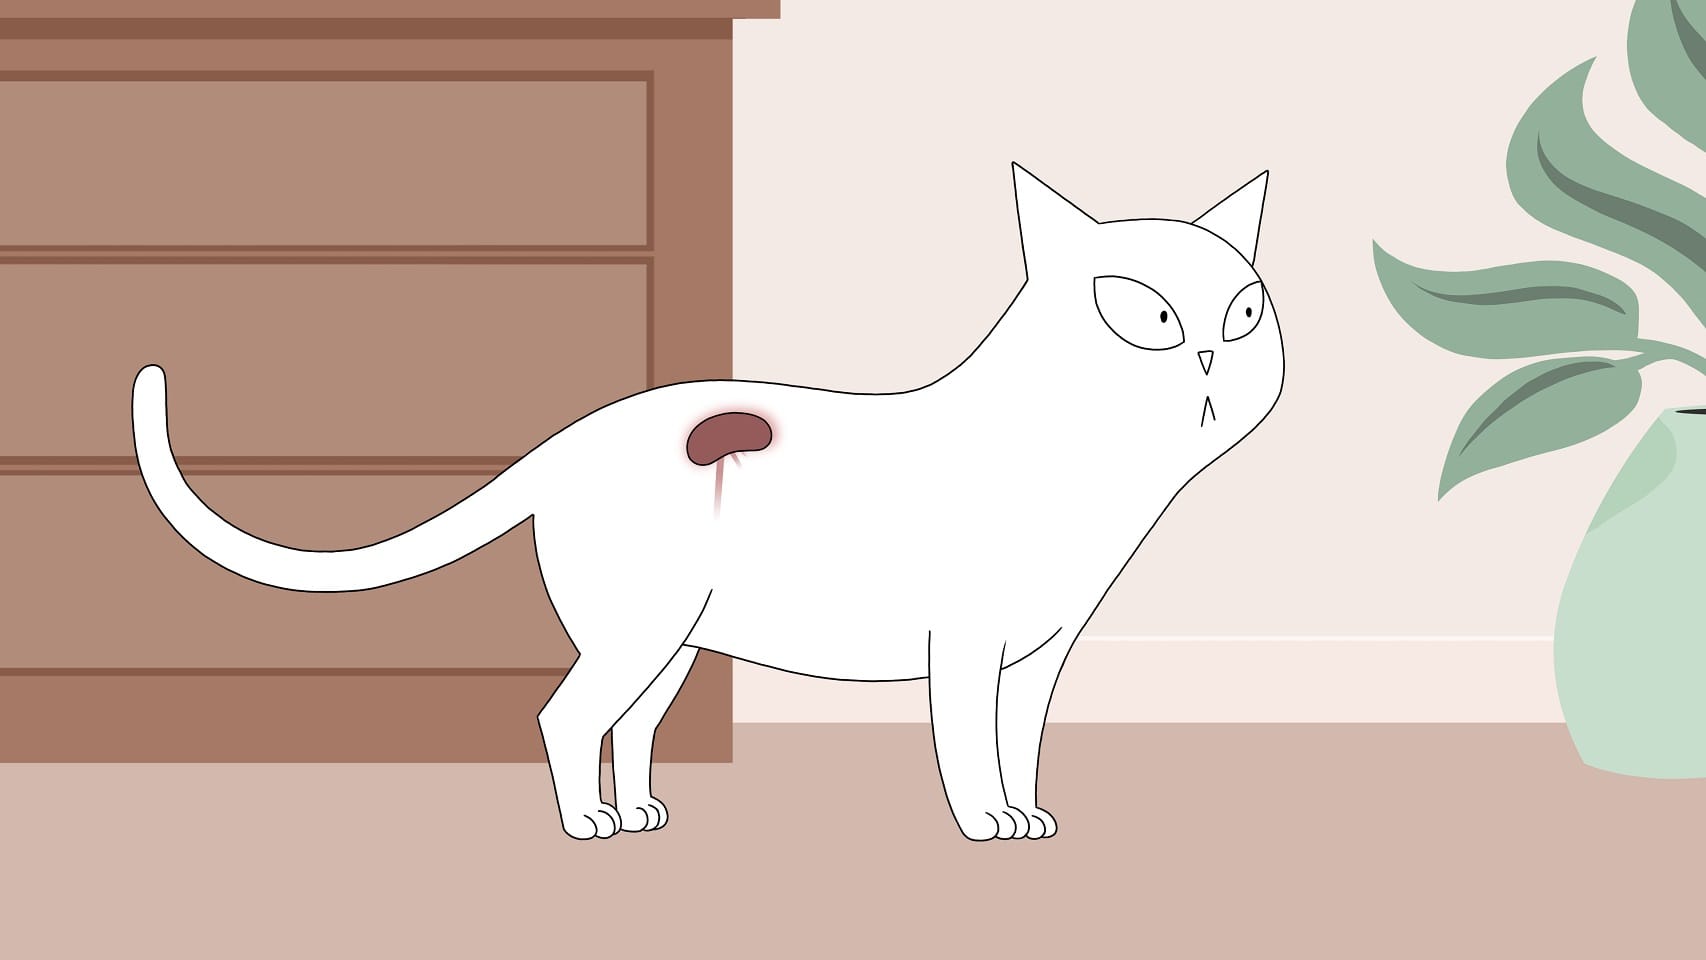 Katze mit chronischer Nierenerkrankung aufgrund von Hypertension  oder hohem Blutdruck